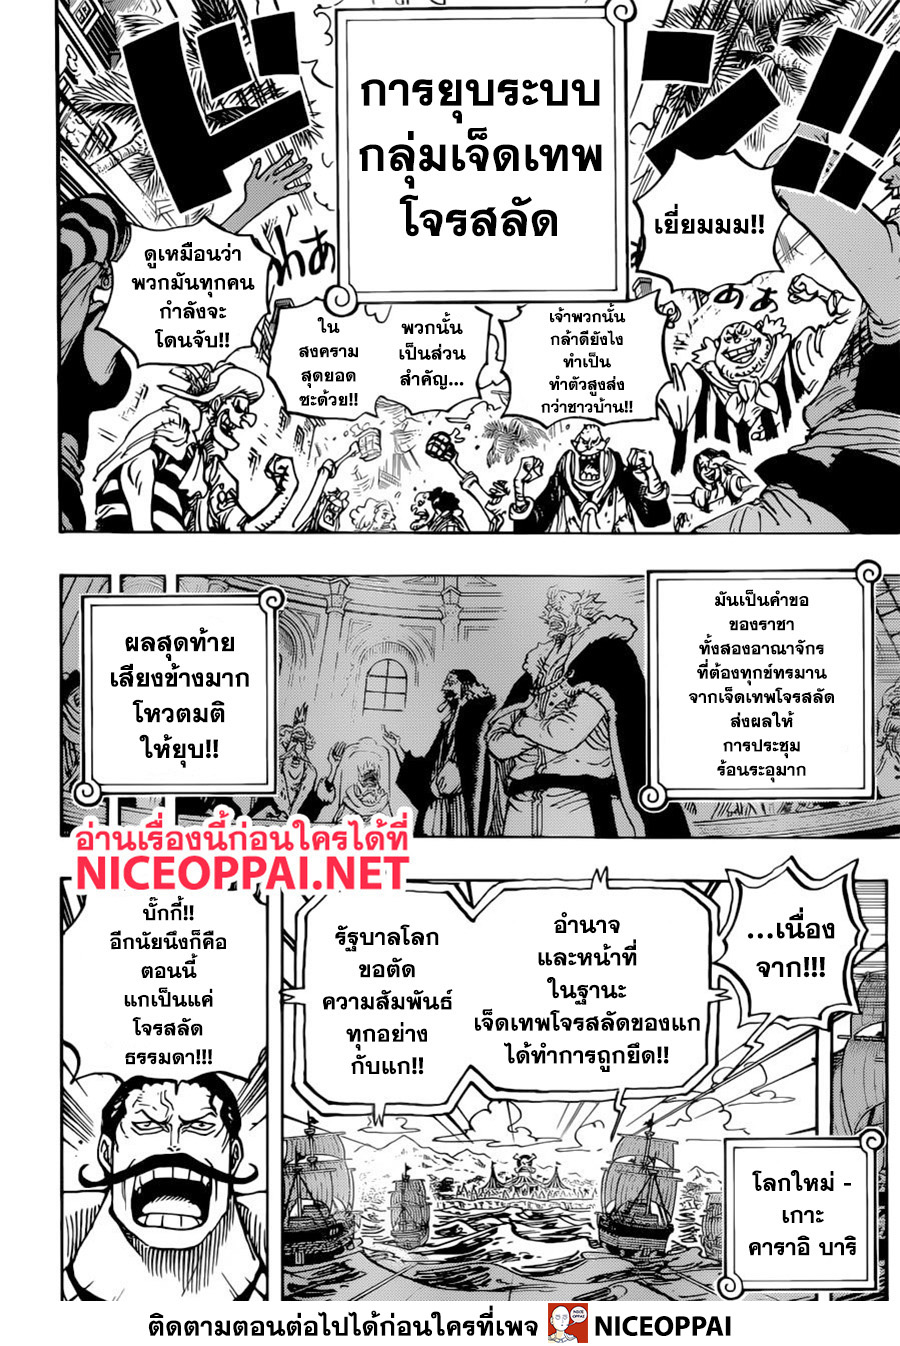 One Piece วันพีซ ตอนที่ 956 : ข่าวใหญ่